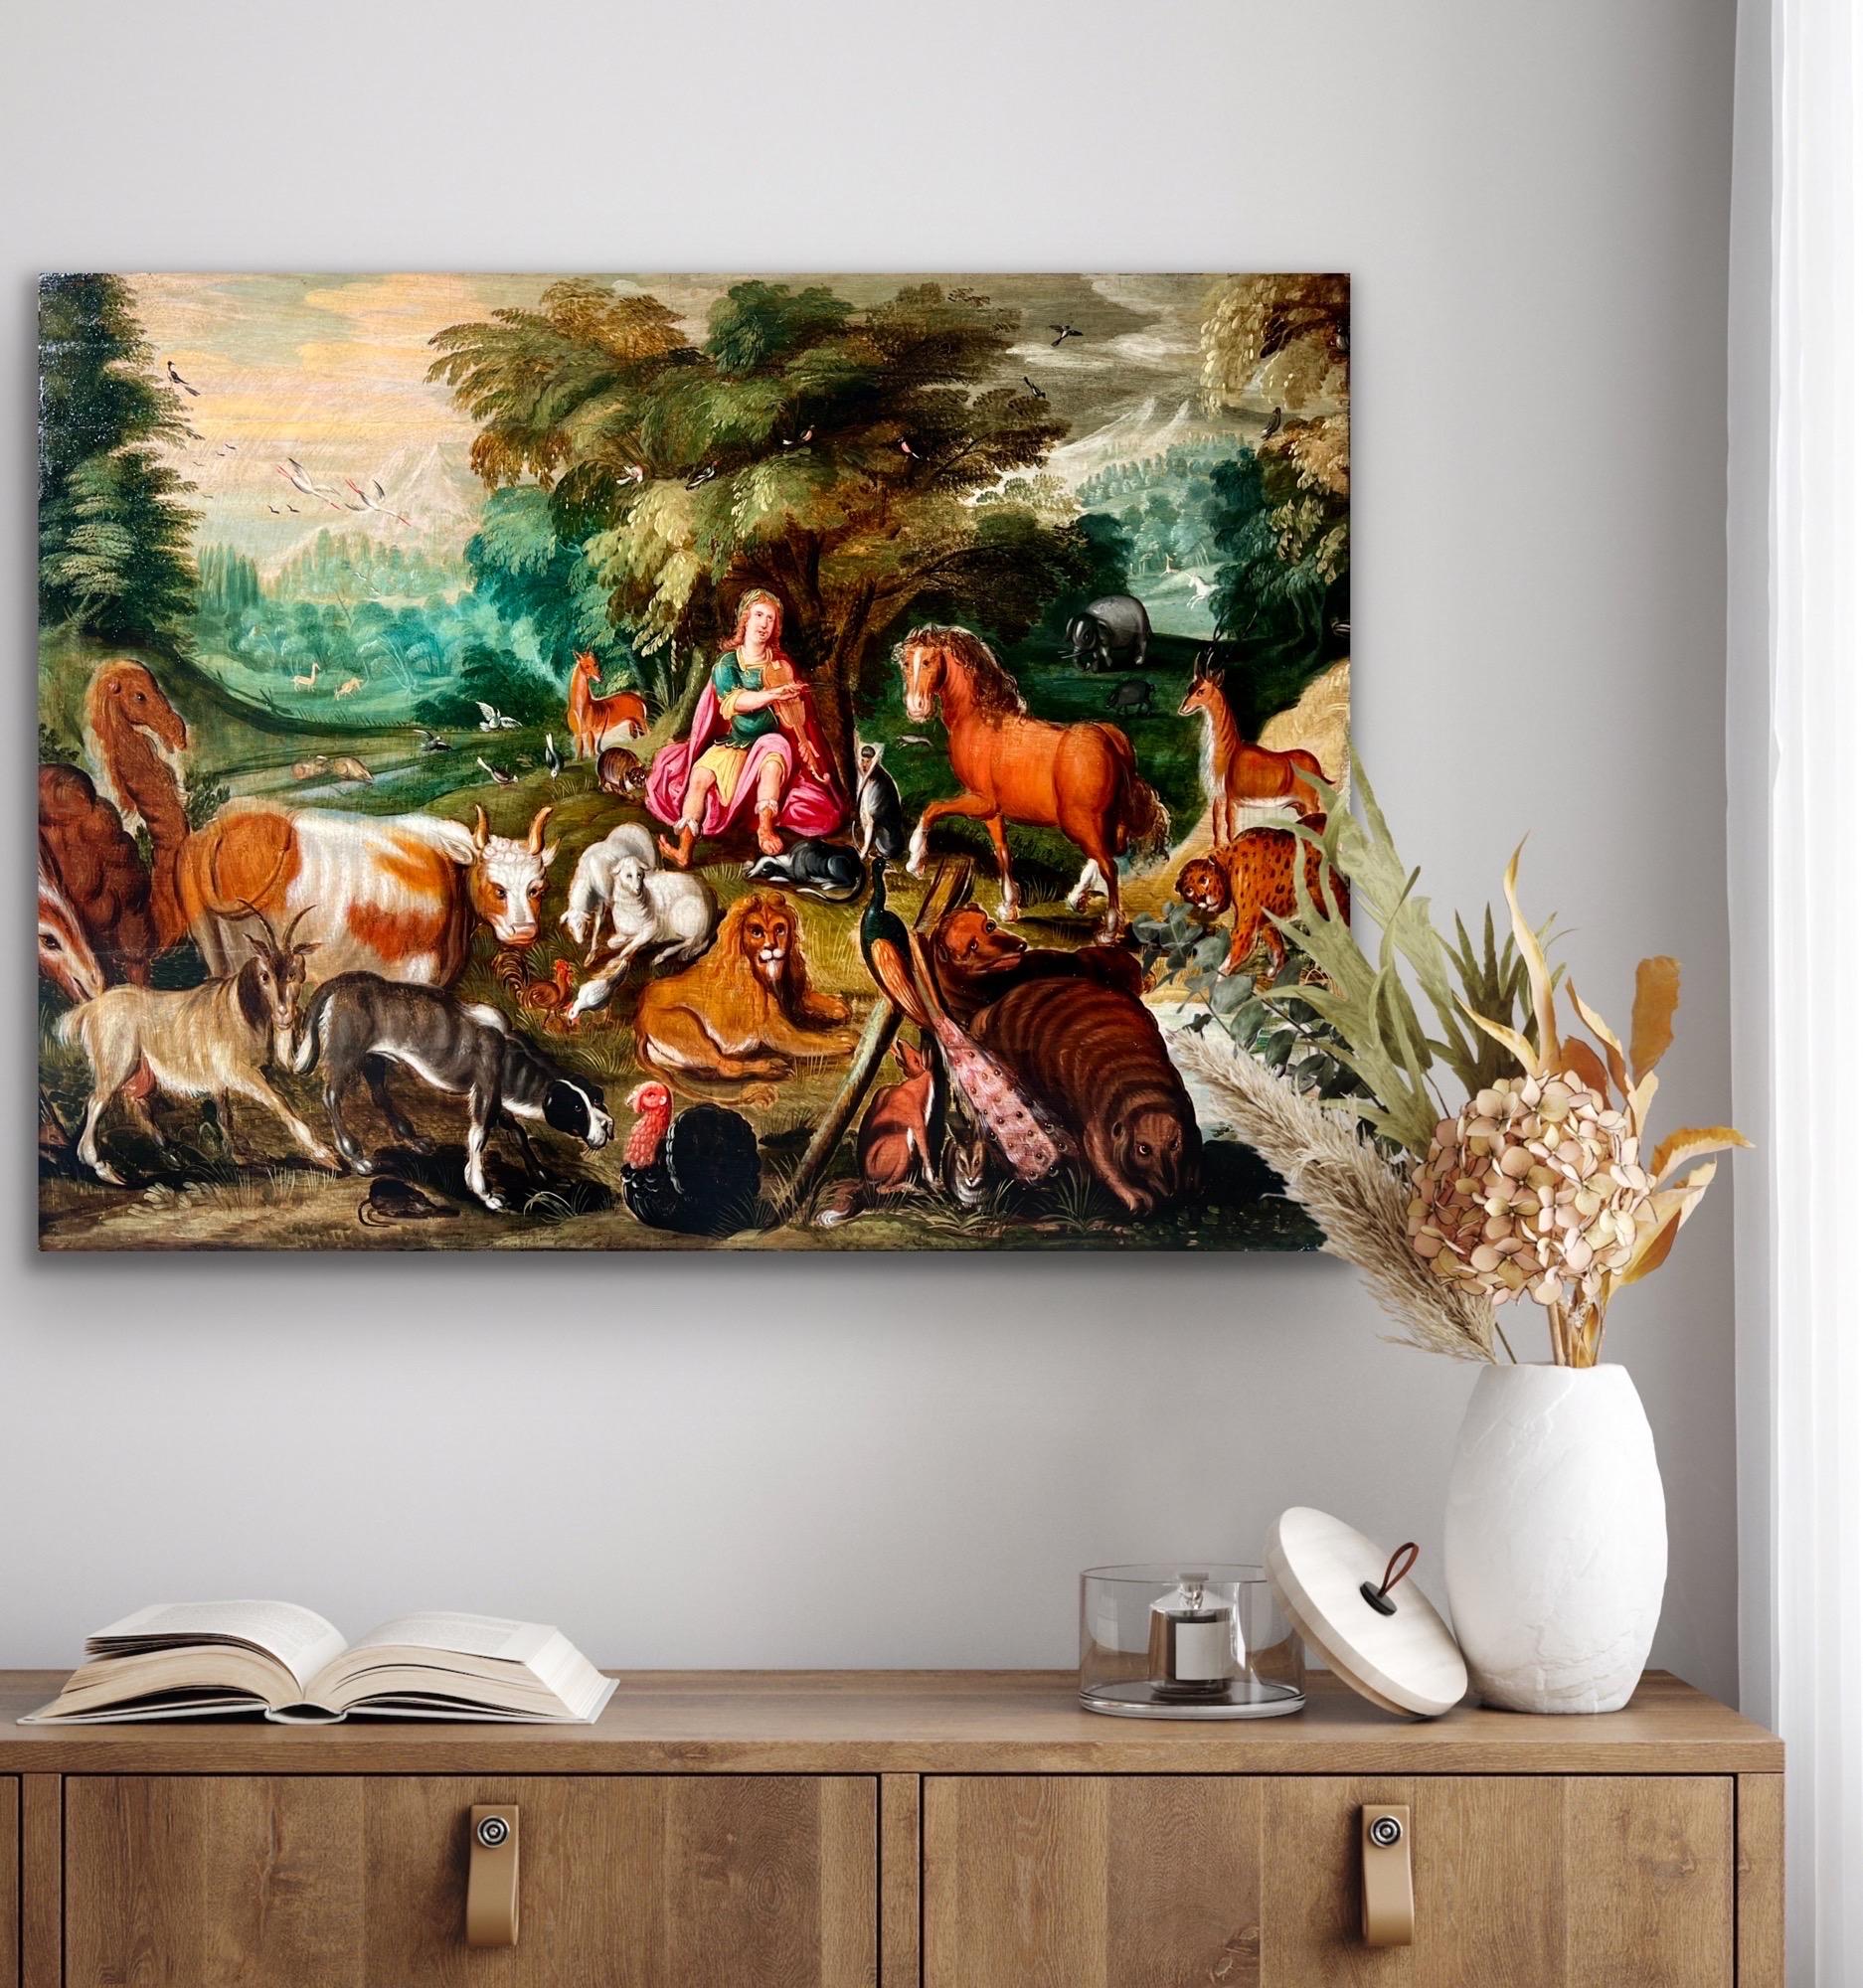 Masterly flamand du 17e siècle - Orphée charme les animaux avec sa musique

La présente peinture est pleine de détails charmants, tels que la licorne galopant au loin, le couple de cigognes dans les airs, les plumes brillantes du paon, ... .

Dans